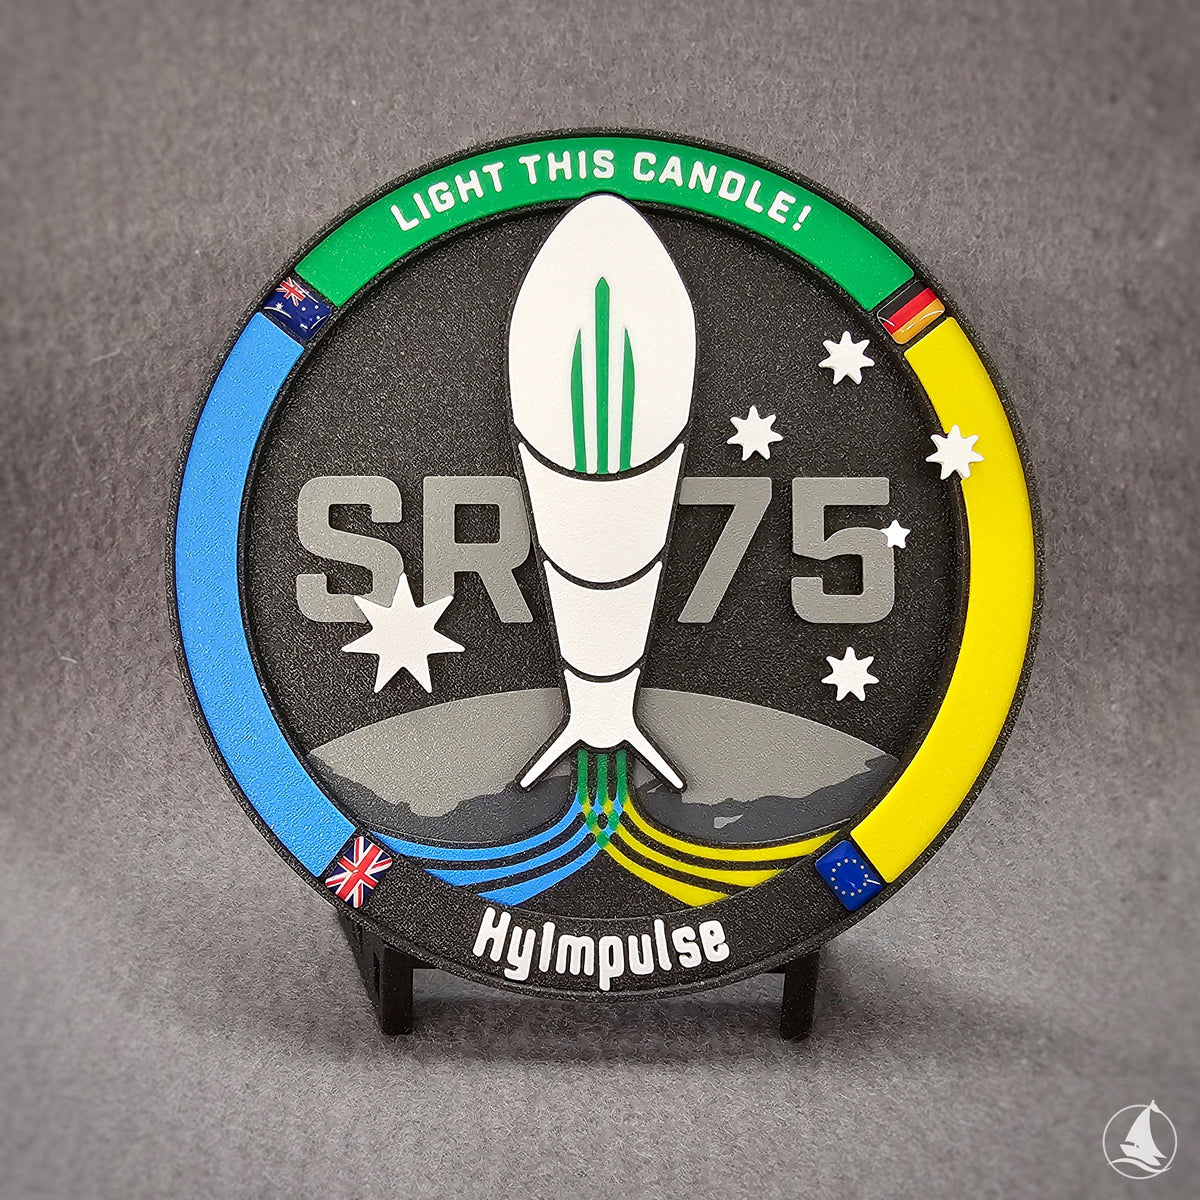 Hyimpulse - SR75 - OFFICIAL 3D-print patch